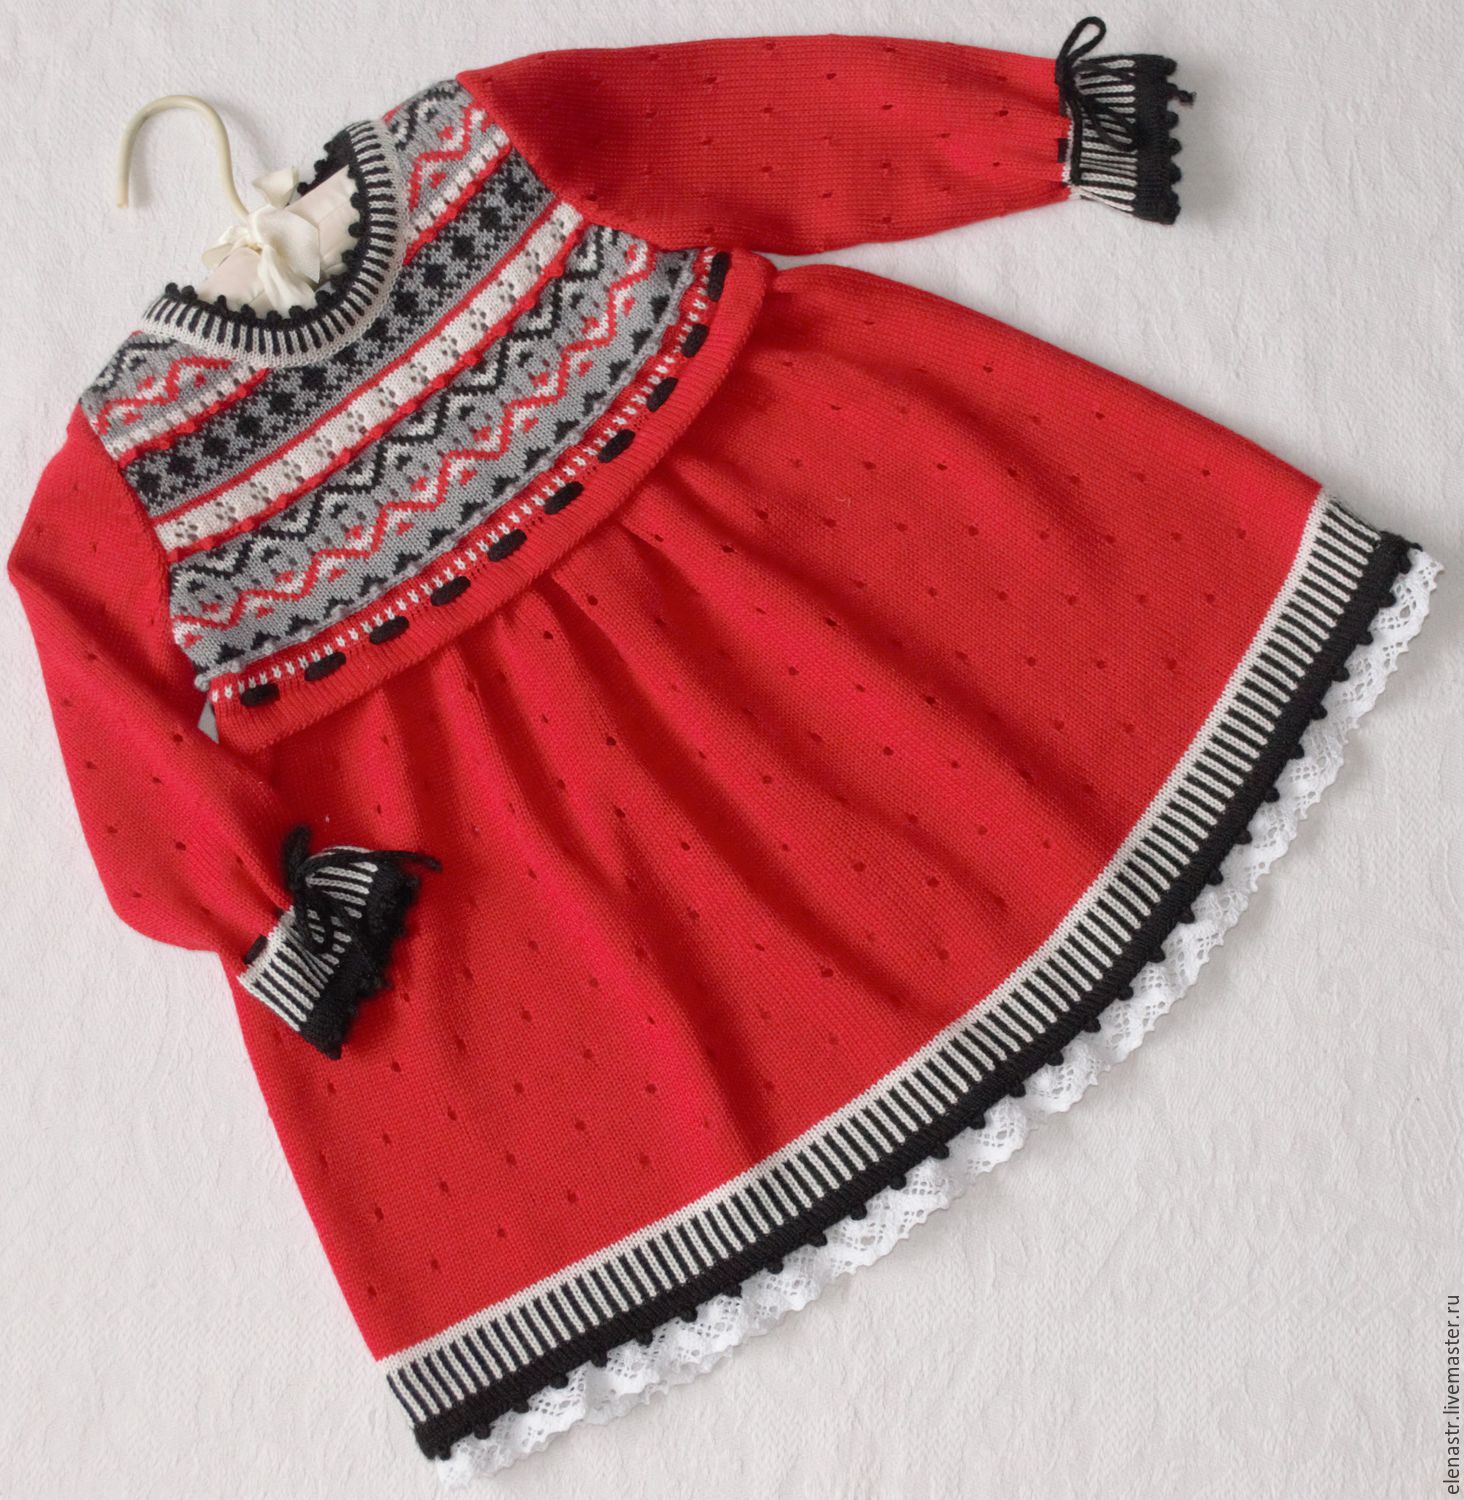 Платье красное для девочки